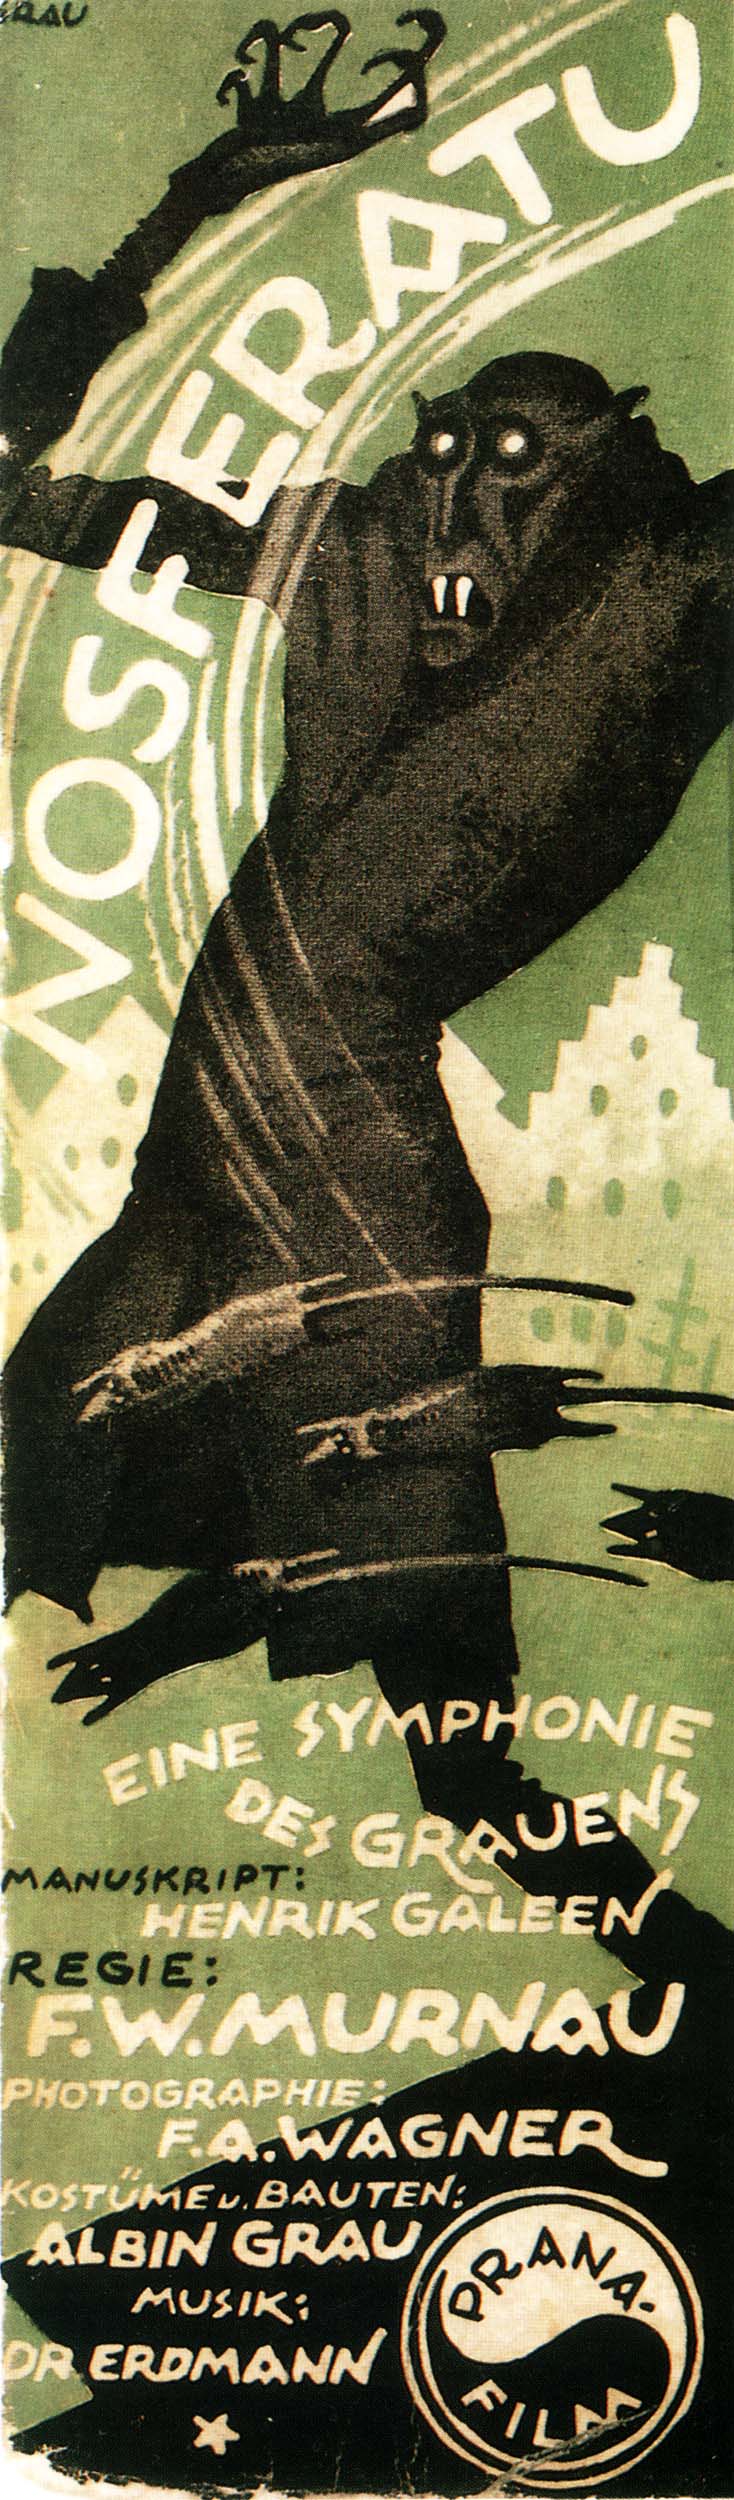 Nosferatu (1922) insert poster by Albin Grau